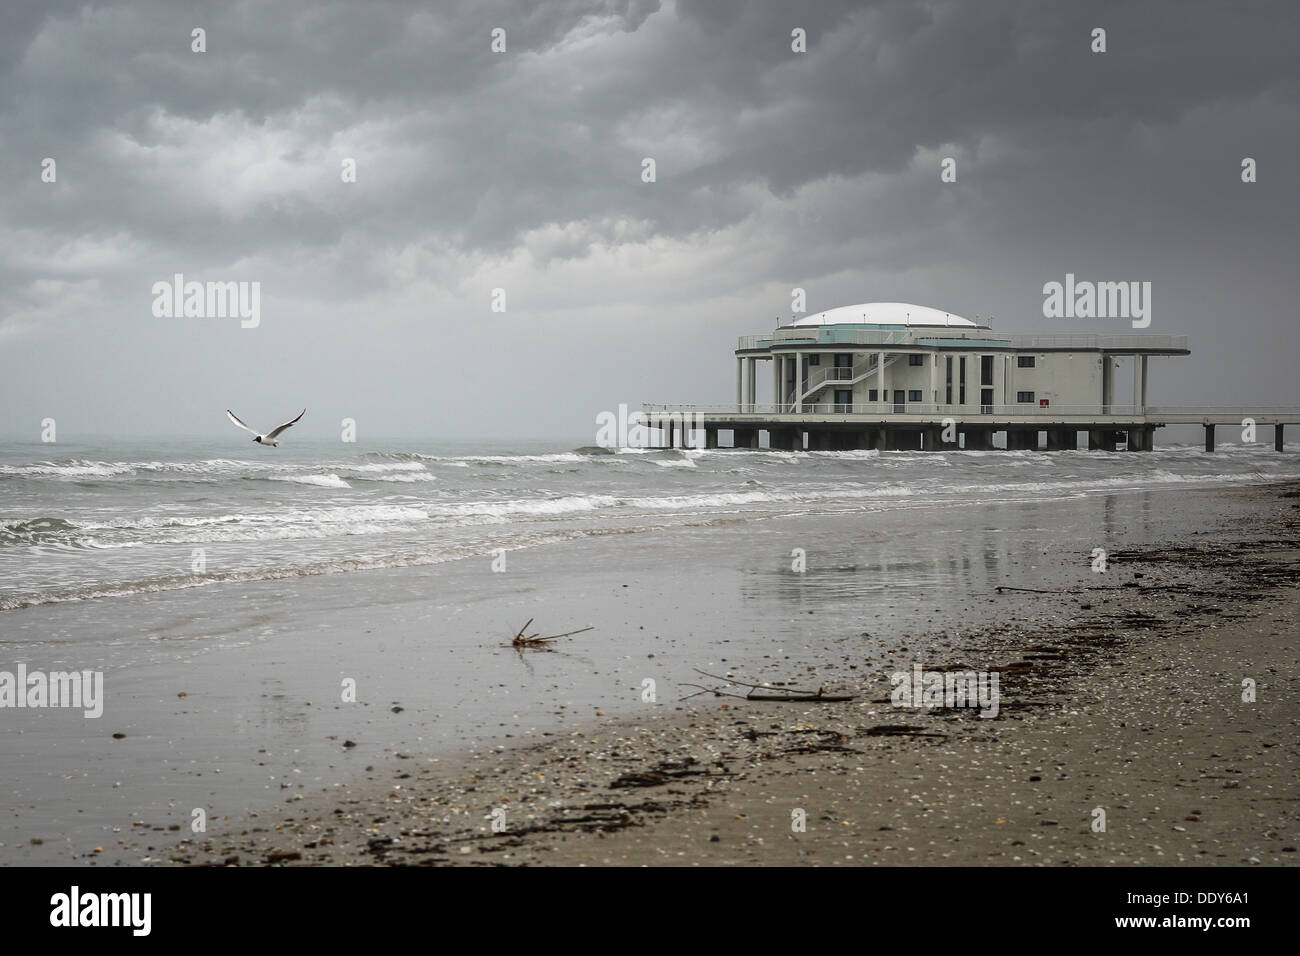 Senigallia (IL) - Hiver Seascape d'une jetée au cours d'une tempête. Banque D'Images